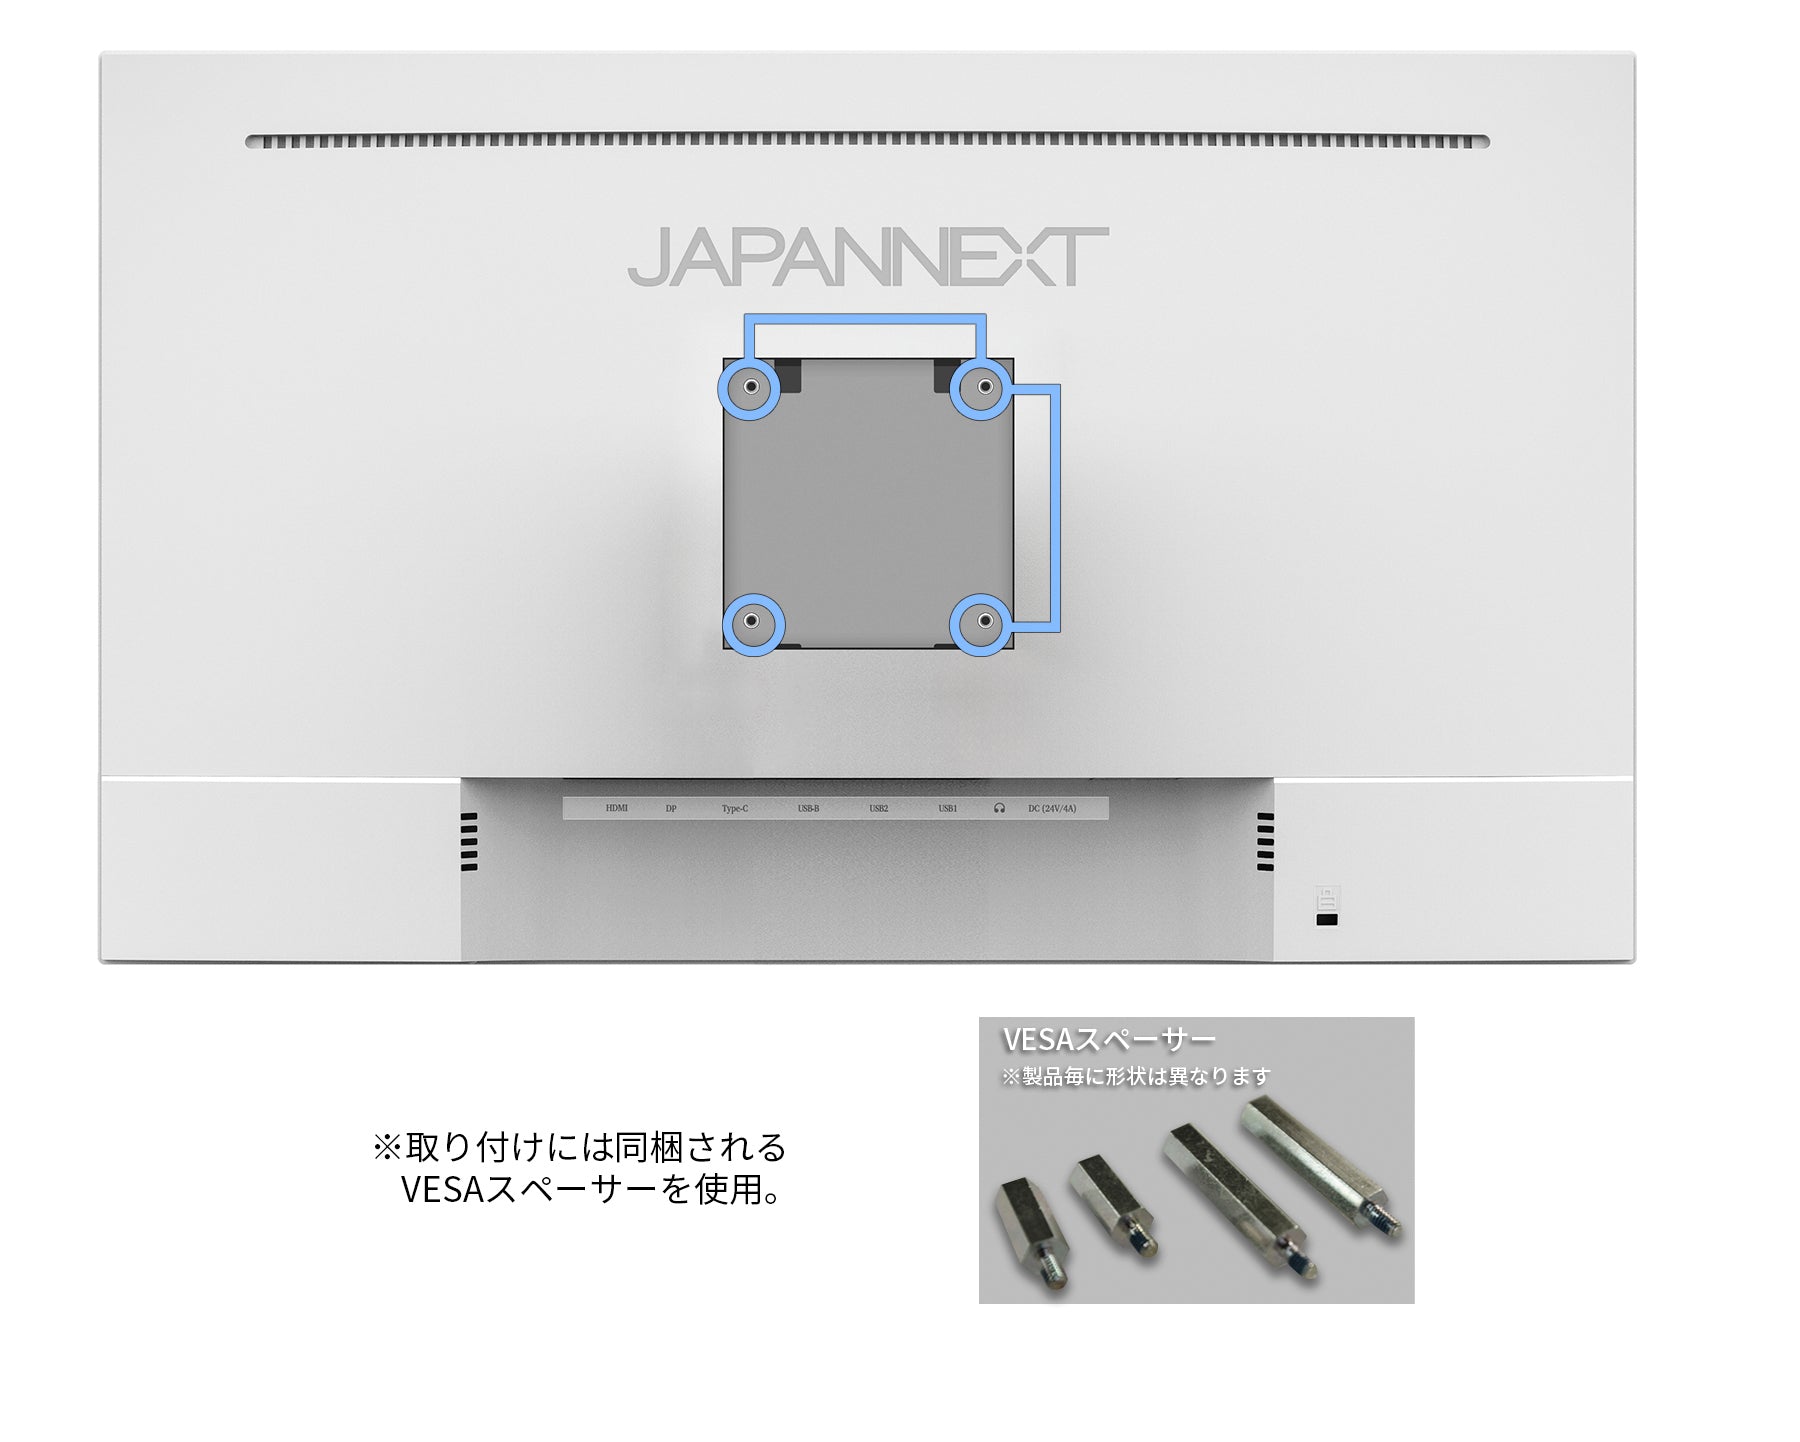 JAPANNEXT 27インチIPSパネル搭載 4K(3840x2160)解像度 液晶モニター 